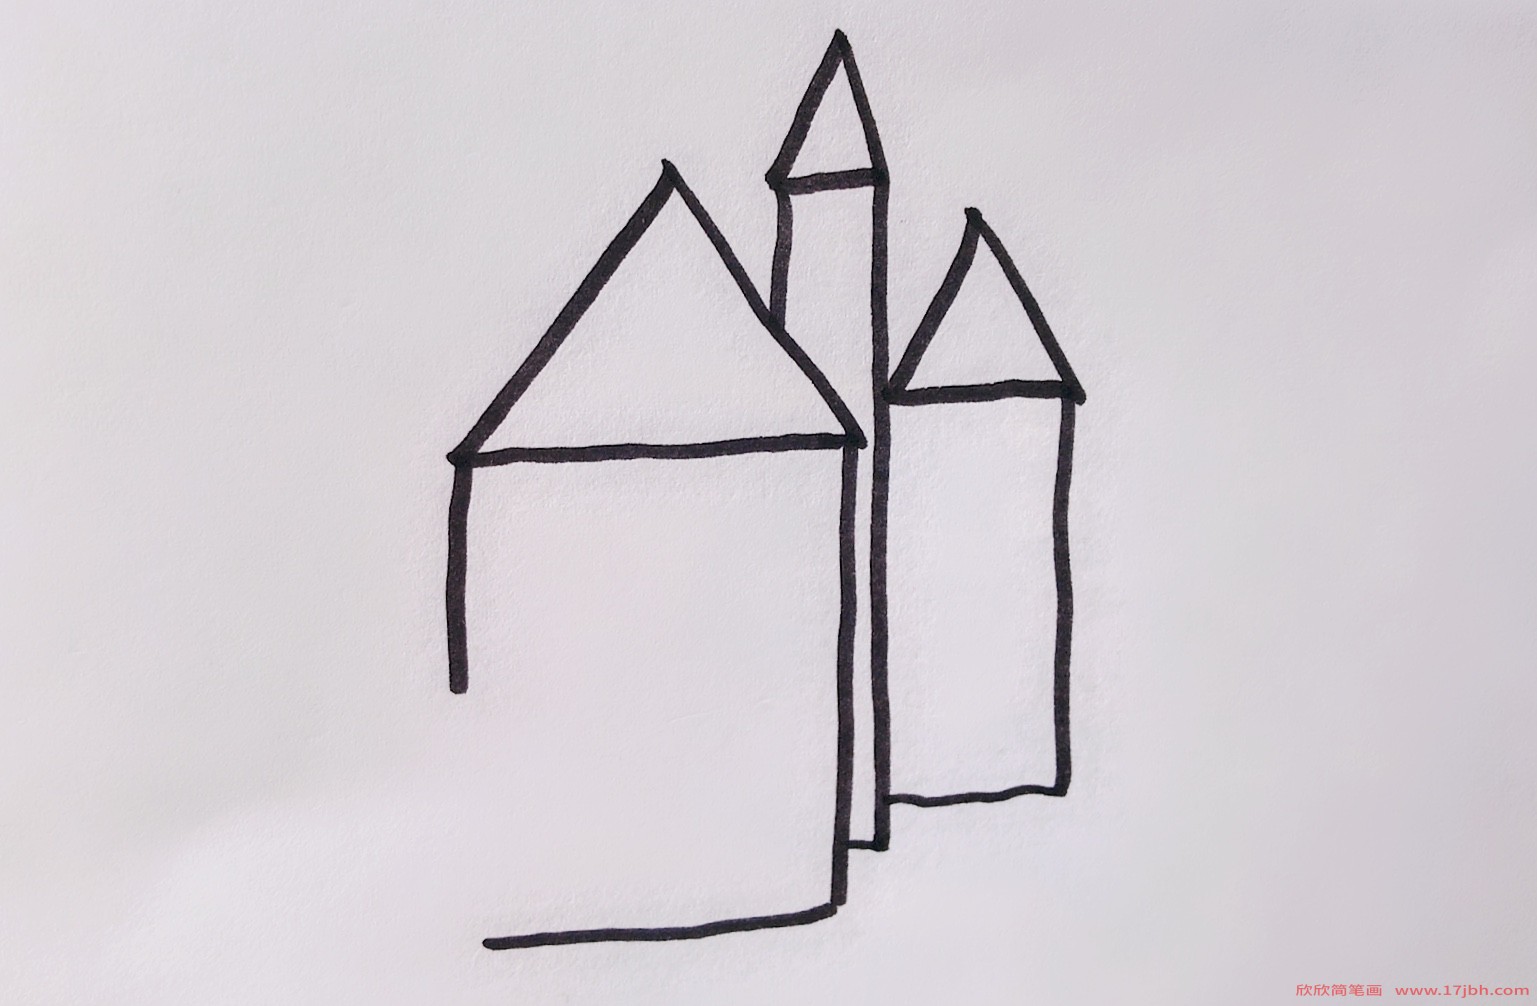 幼儿园简笔画房子图片